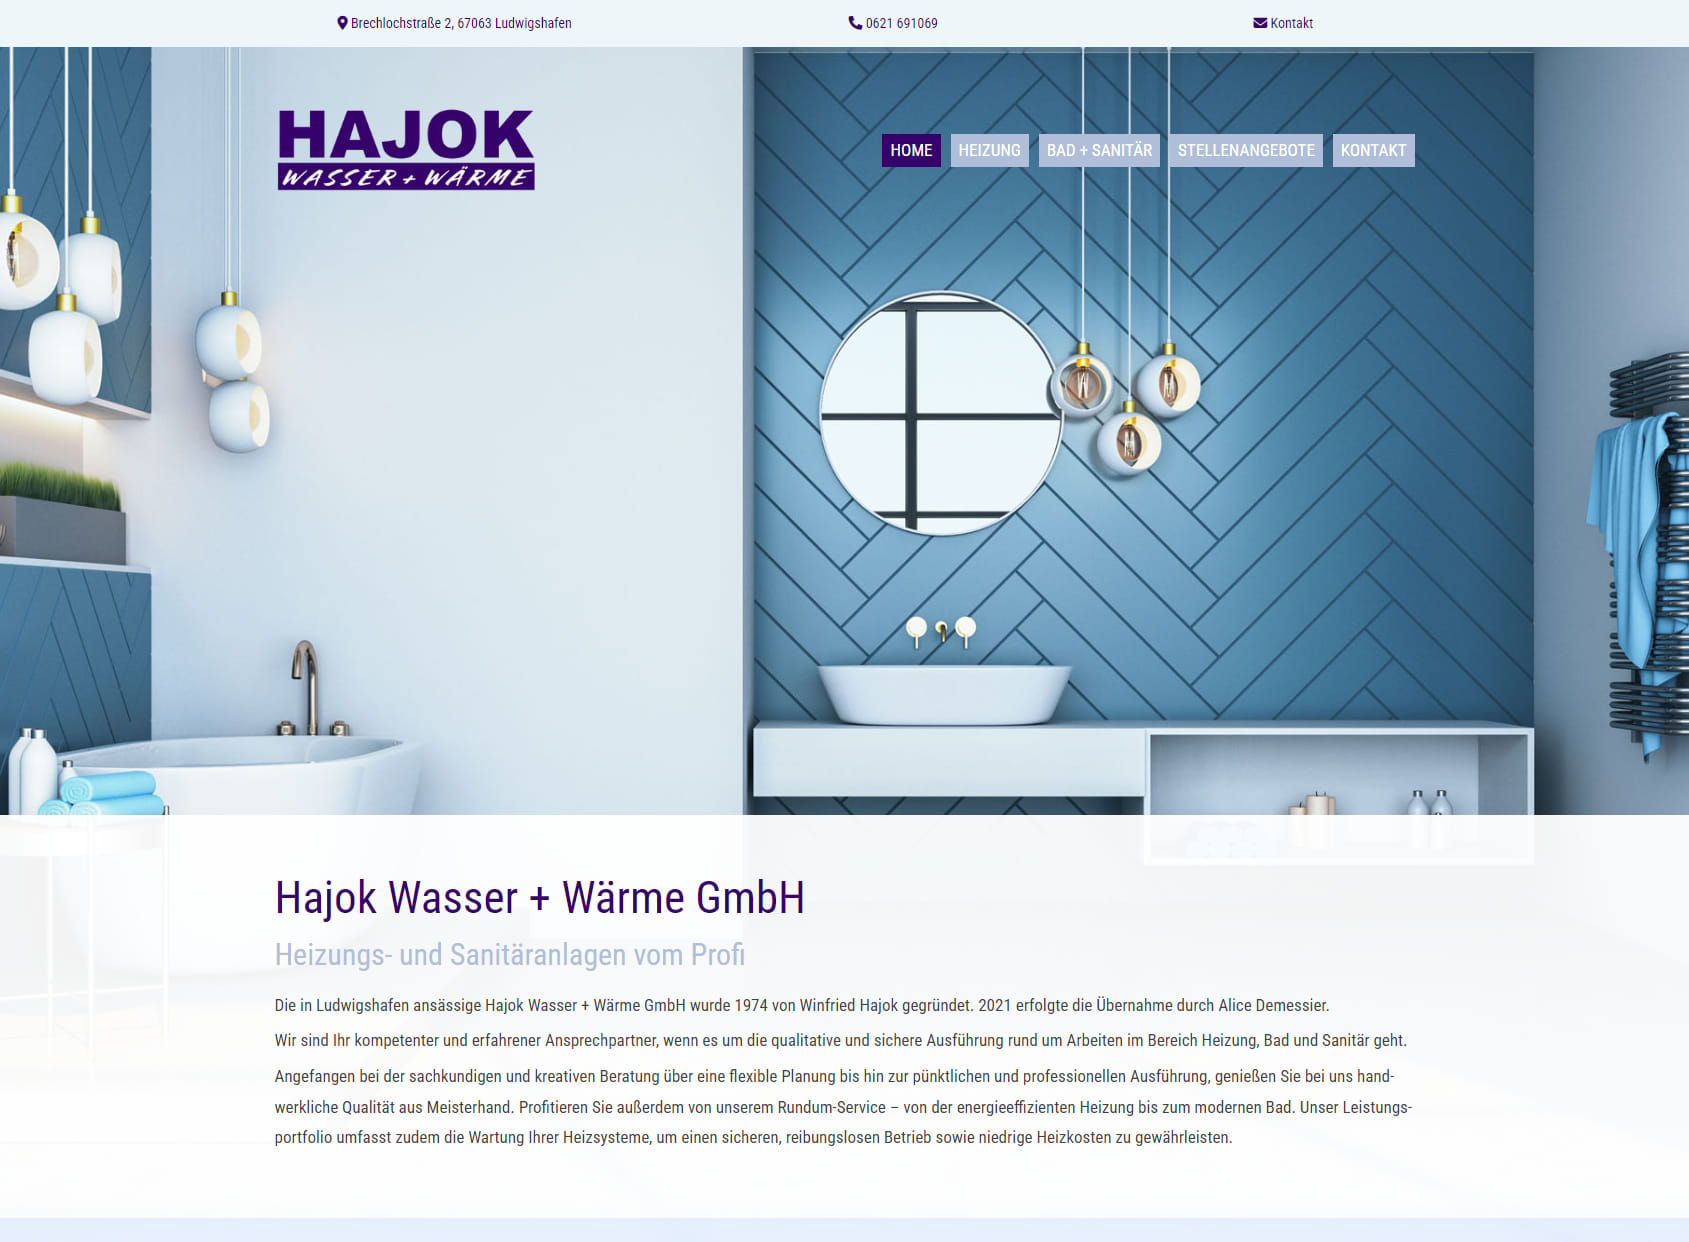 Hajok Wasser + Wärme GmbH